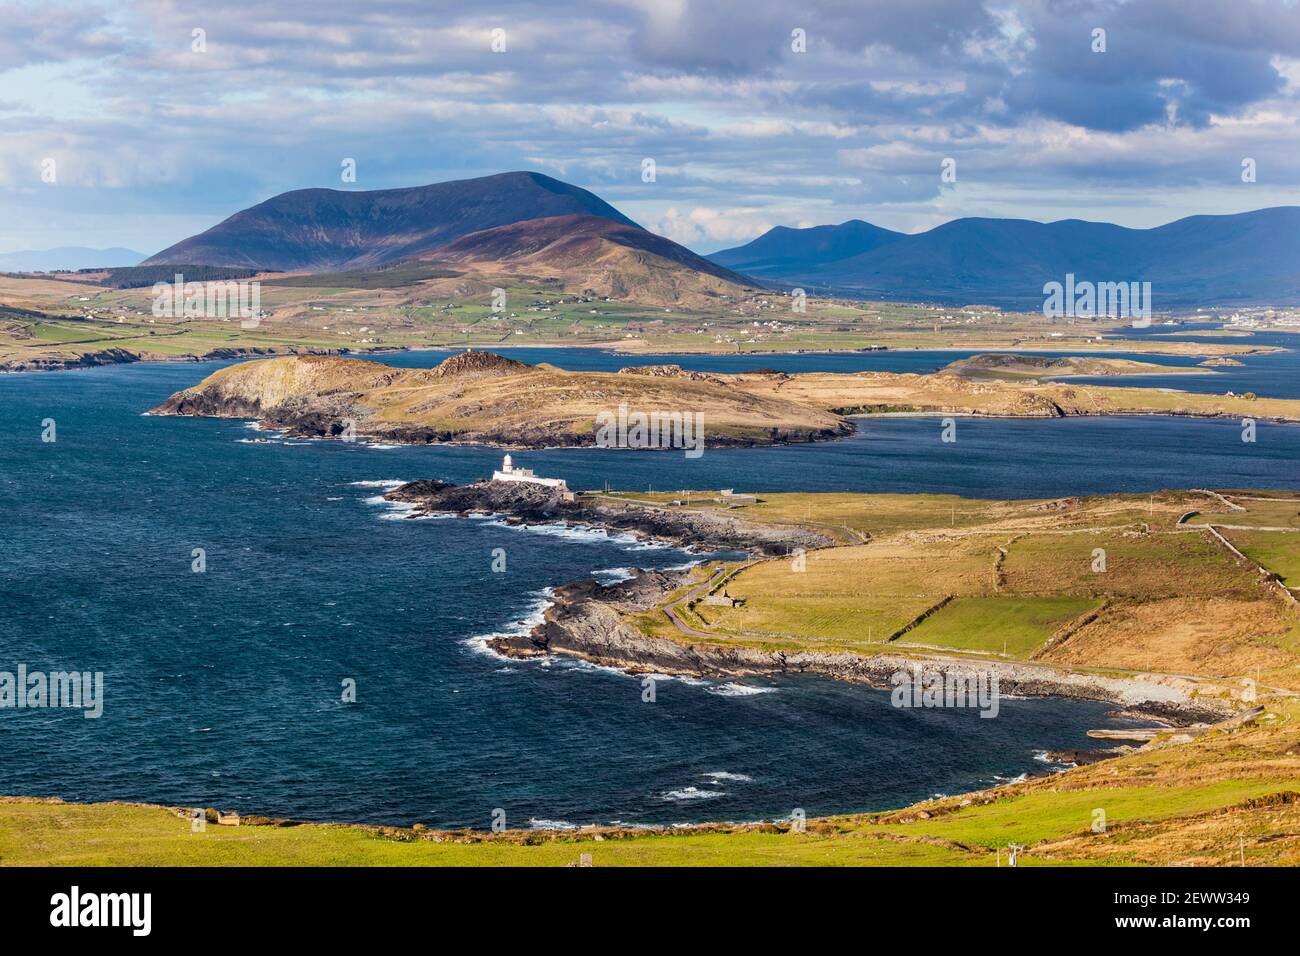 Valentia Leuchtturm am Cromwell Point auf Valentia Island, County Kerry, Irland. Es ist das westlichste Hafenlicht auf der Insel Irland. Stockfoto